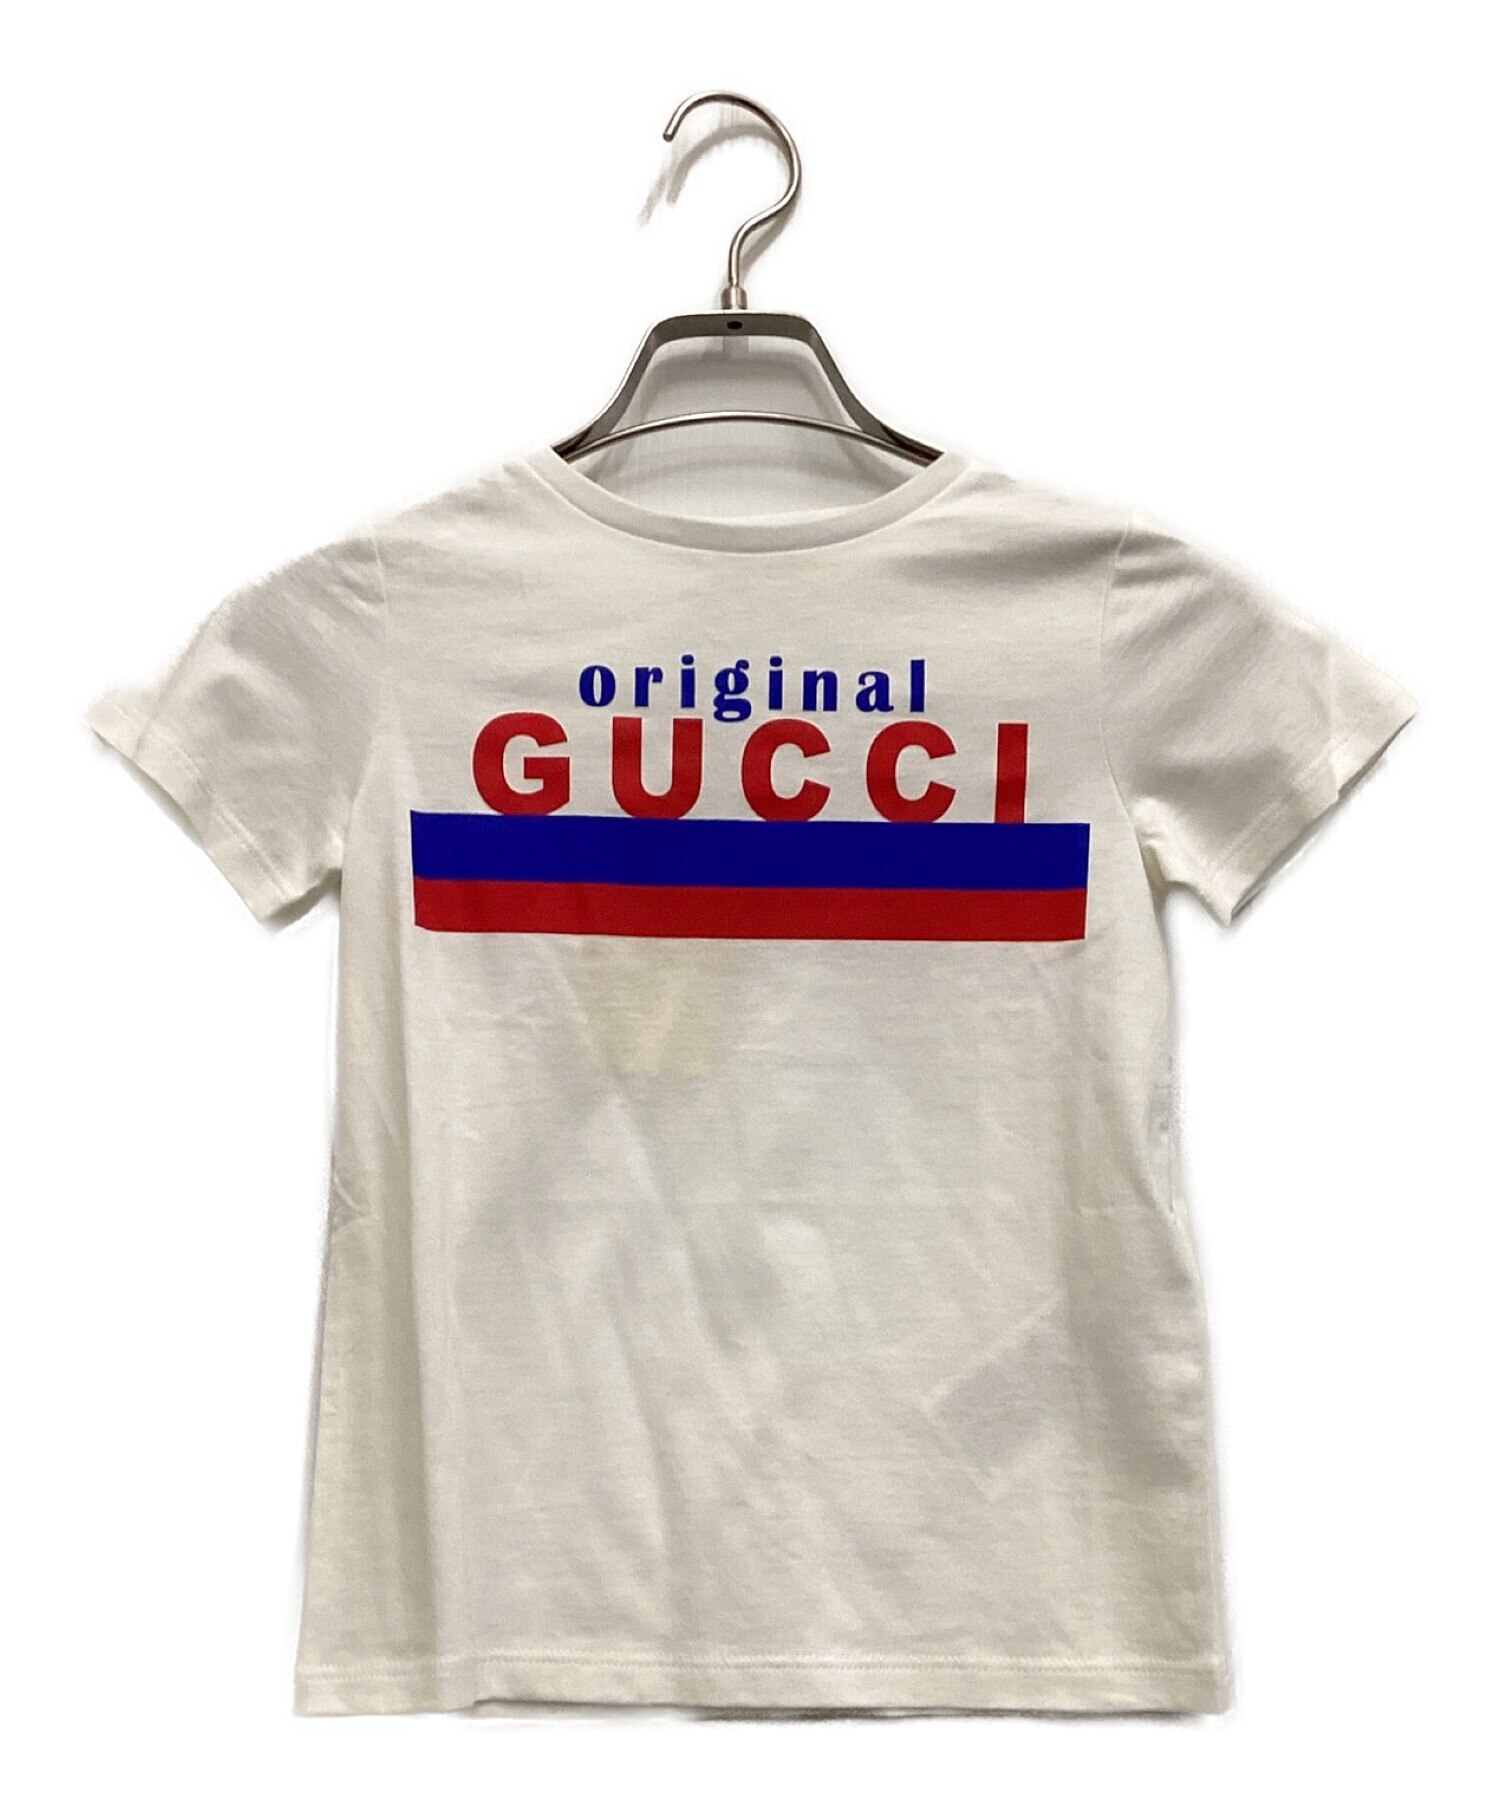 中古・古着通販】GUCCI (グッチ) Original Gucci Tシャツ ホワイト